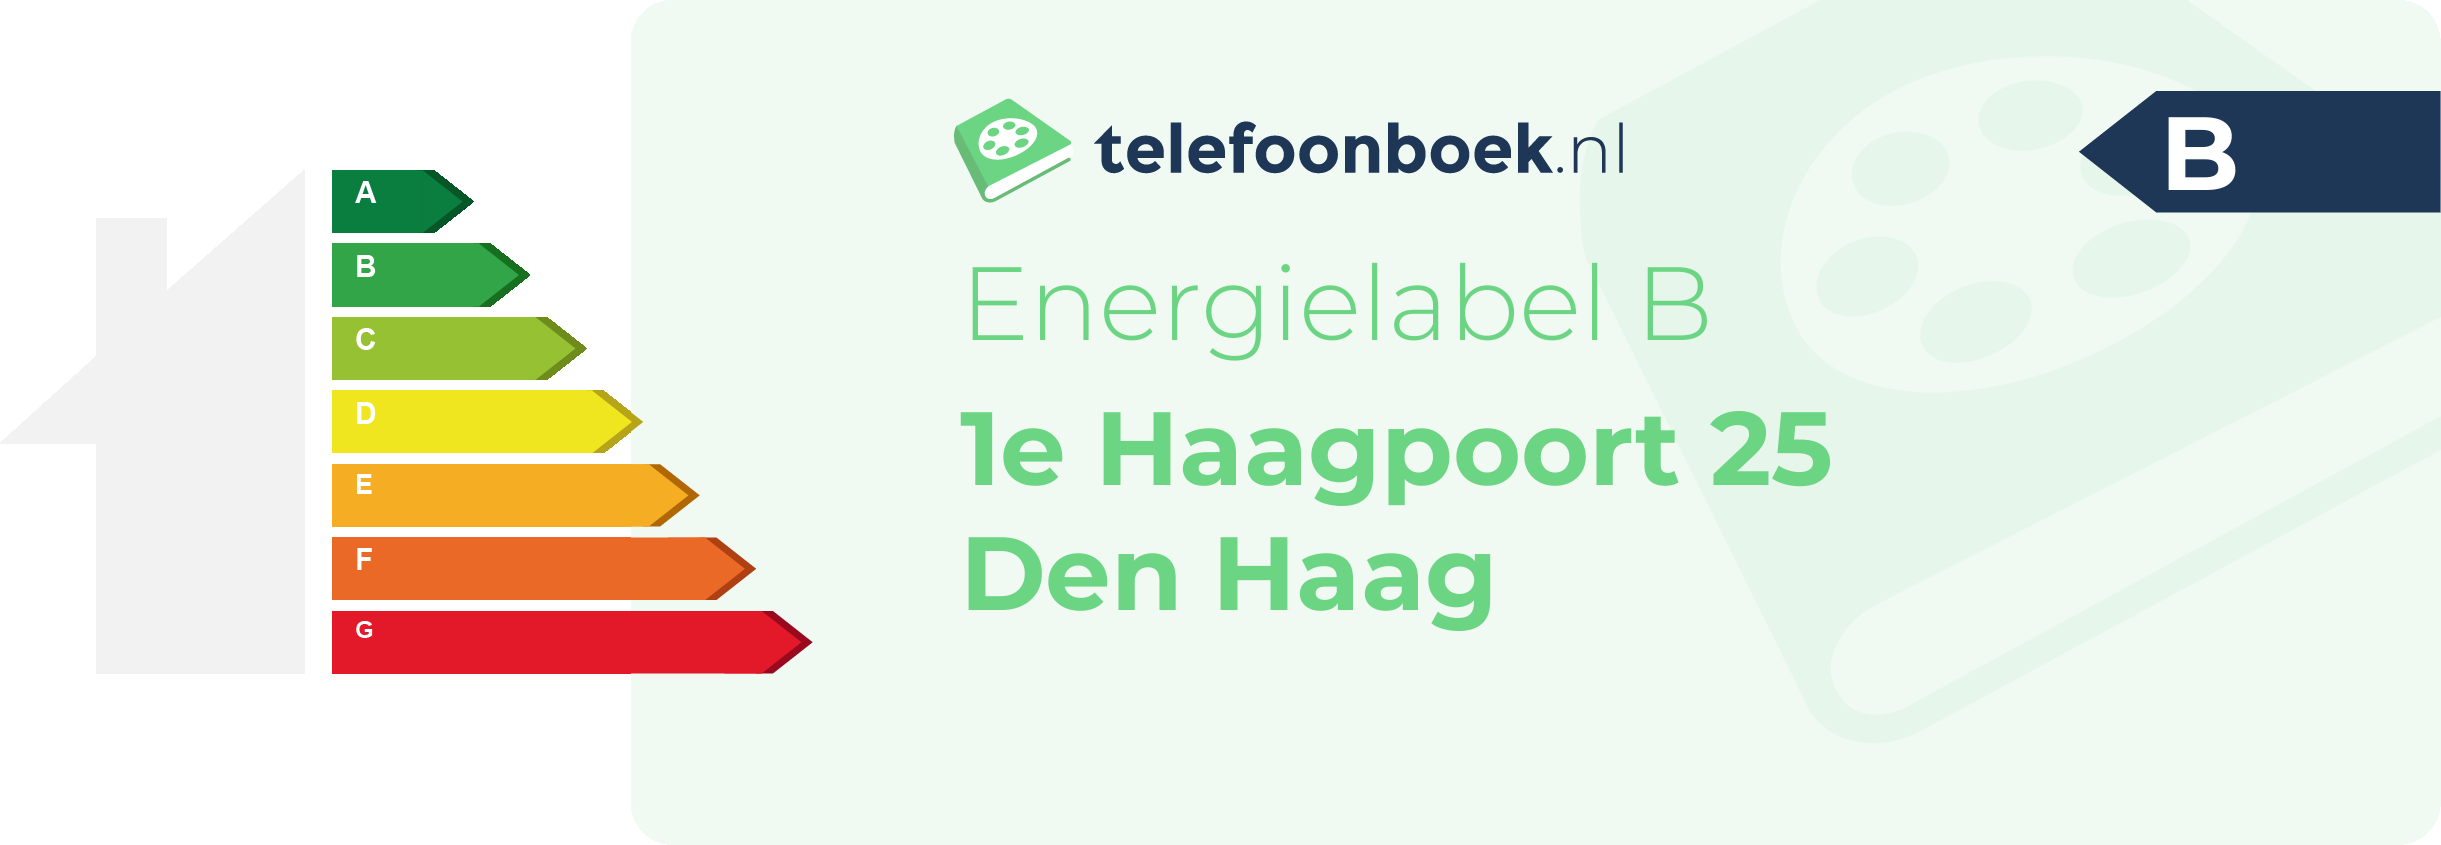 Energielabel 1e Haagpoort 25 Den Haag